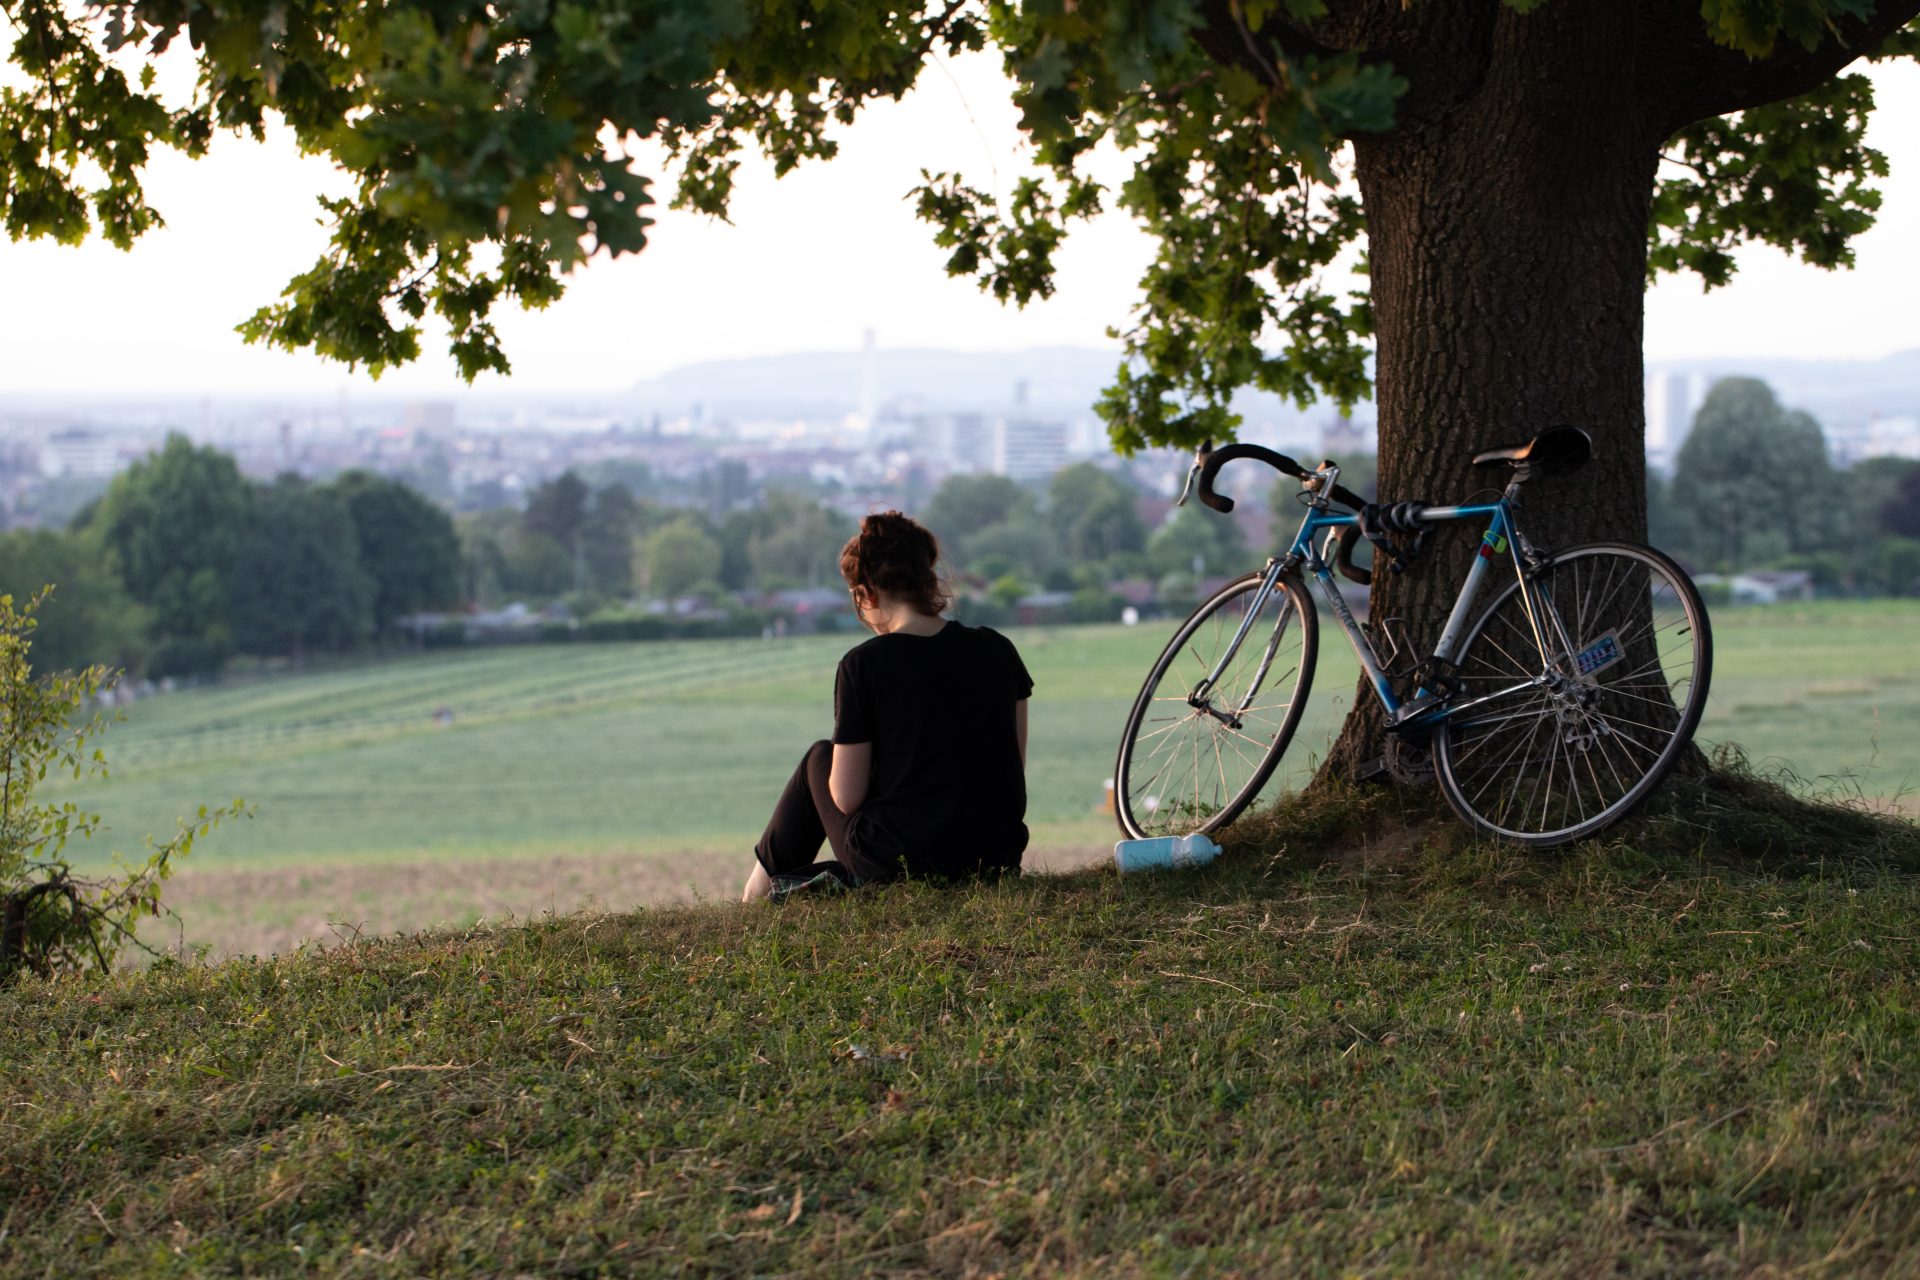 Eine Person sitzt unter einem Baum auf einer grünen Wiese. Am Baum lehnt ein Fahrrad.